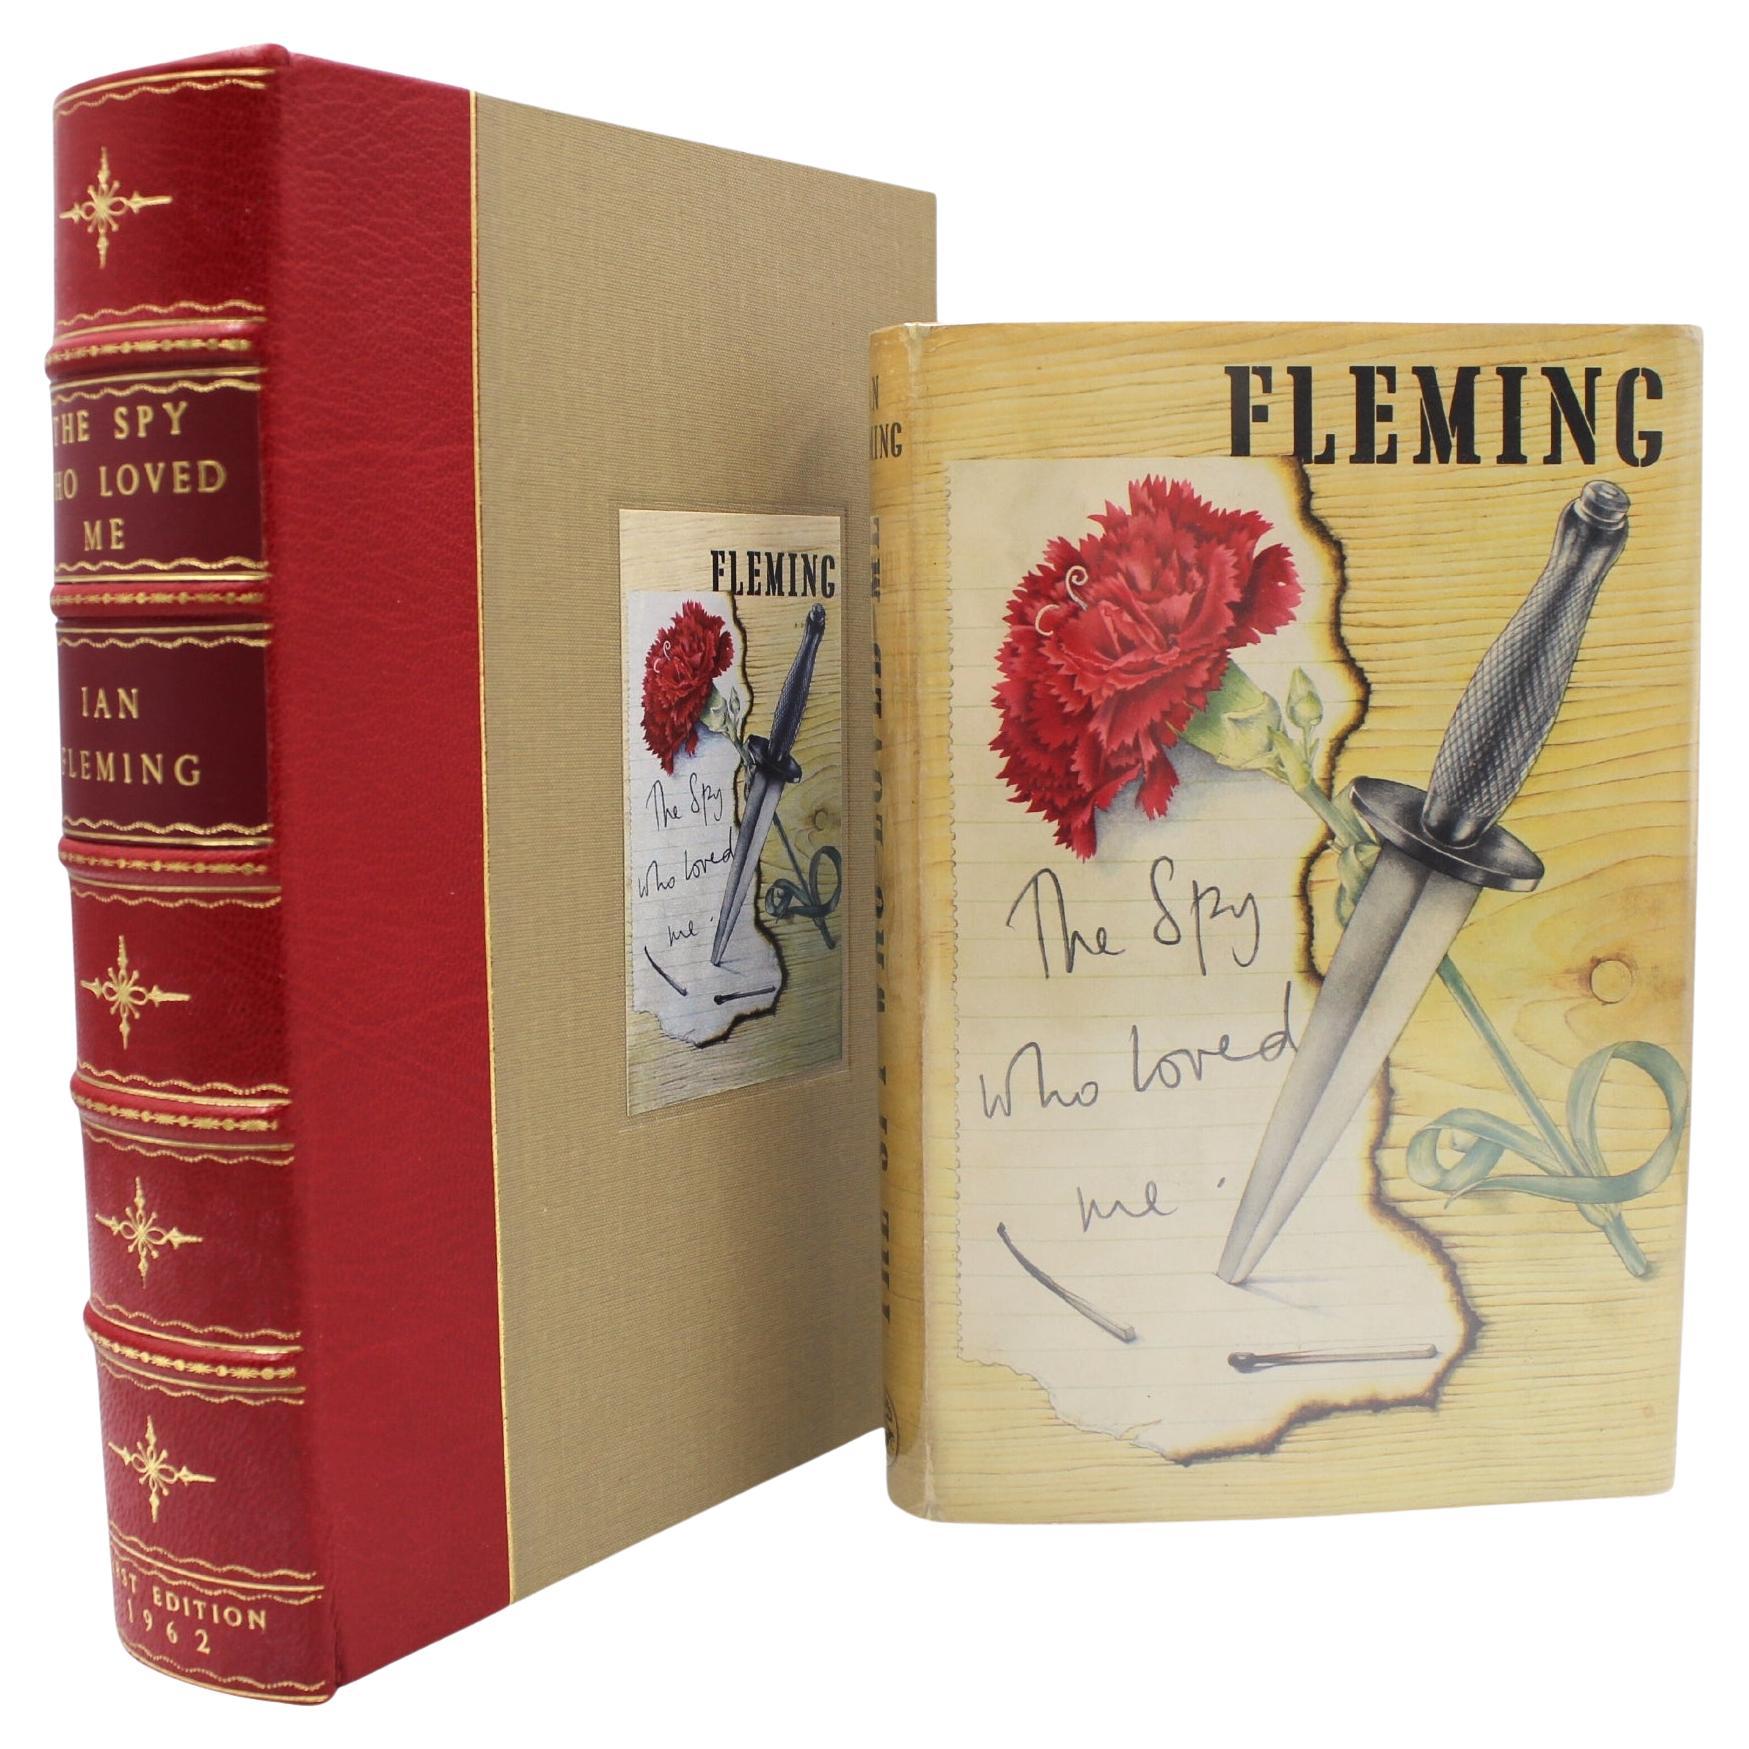 The Spy Who Loved Me von Ian Fleming, Erstausgabe in Original-Aufbewahrungsbeutel, 1962